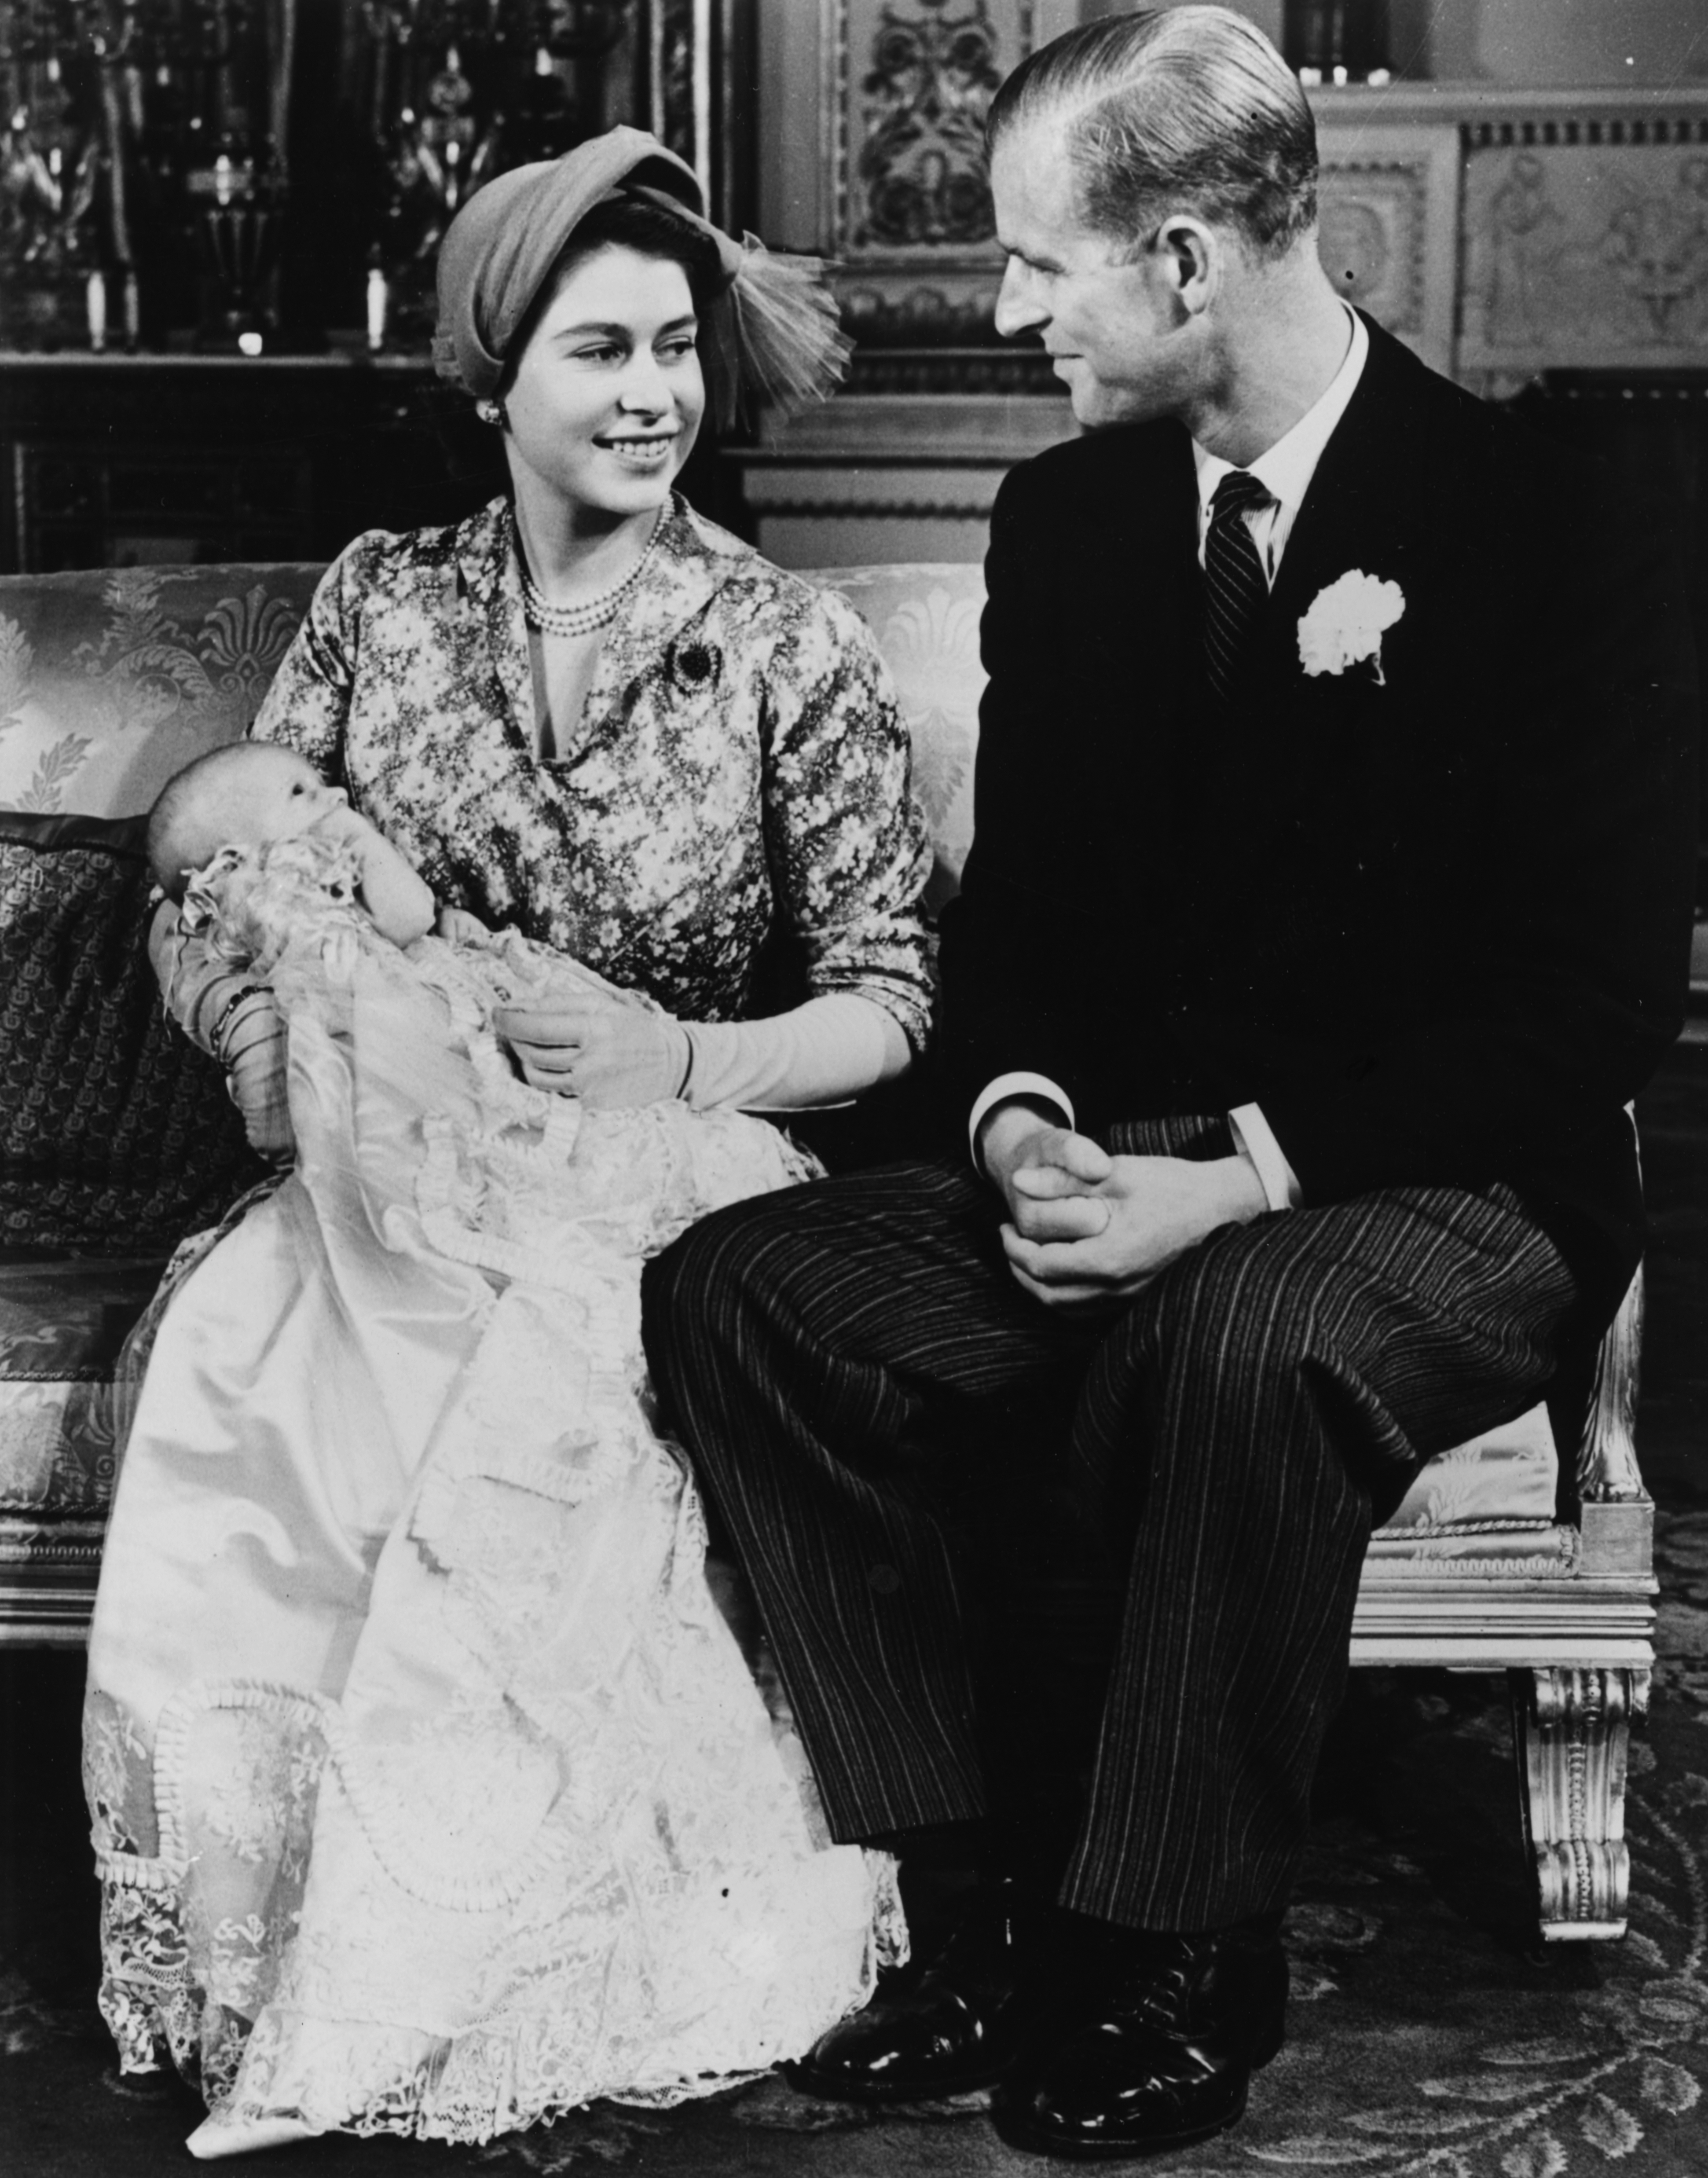 Британската кралица Елизабет II и съпругът й - Единбургският херцог Филип отбелязаха платинена годишнина – 70 години от сватбата си.Никой от предшествениците на сегашната кралица на британския престол не е отбелязвал толкова голяма годишнина от семейния си съюз.Още през октомври Бъкингамският дворец даде да се разбере, че не се предвиждат никакви публични тържества по повод годишнината.91-годишната Елизабет и 96-годишният Филип останаха в замъка Уиндзор.